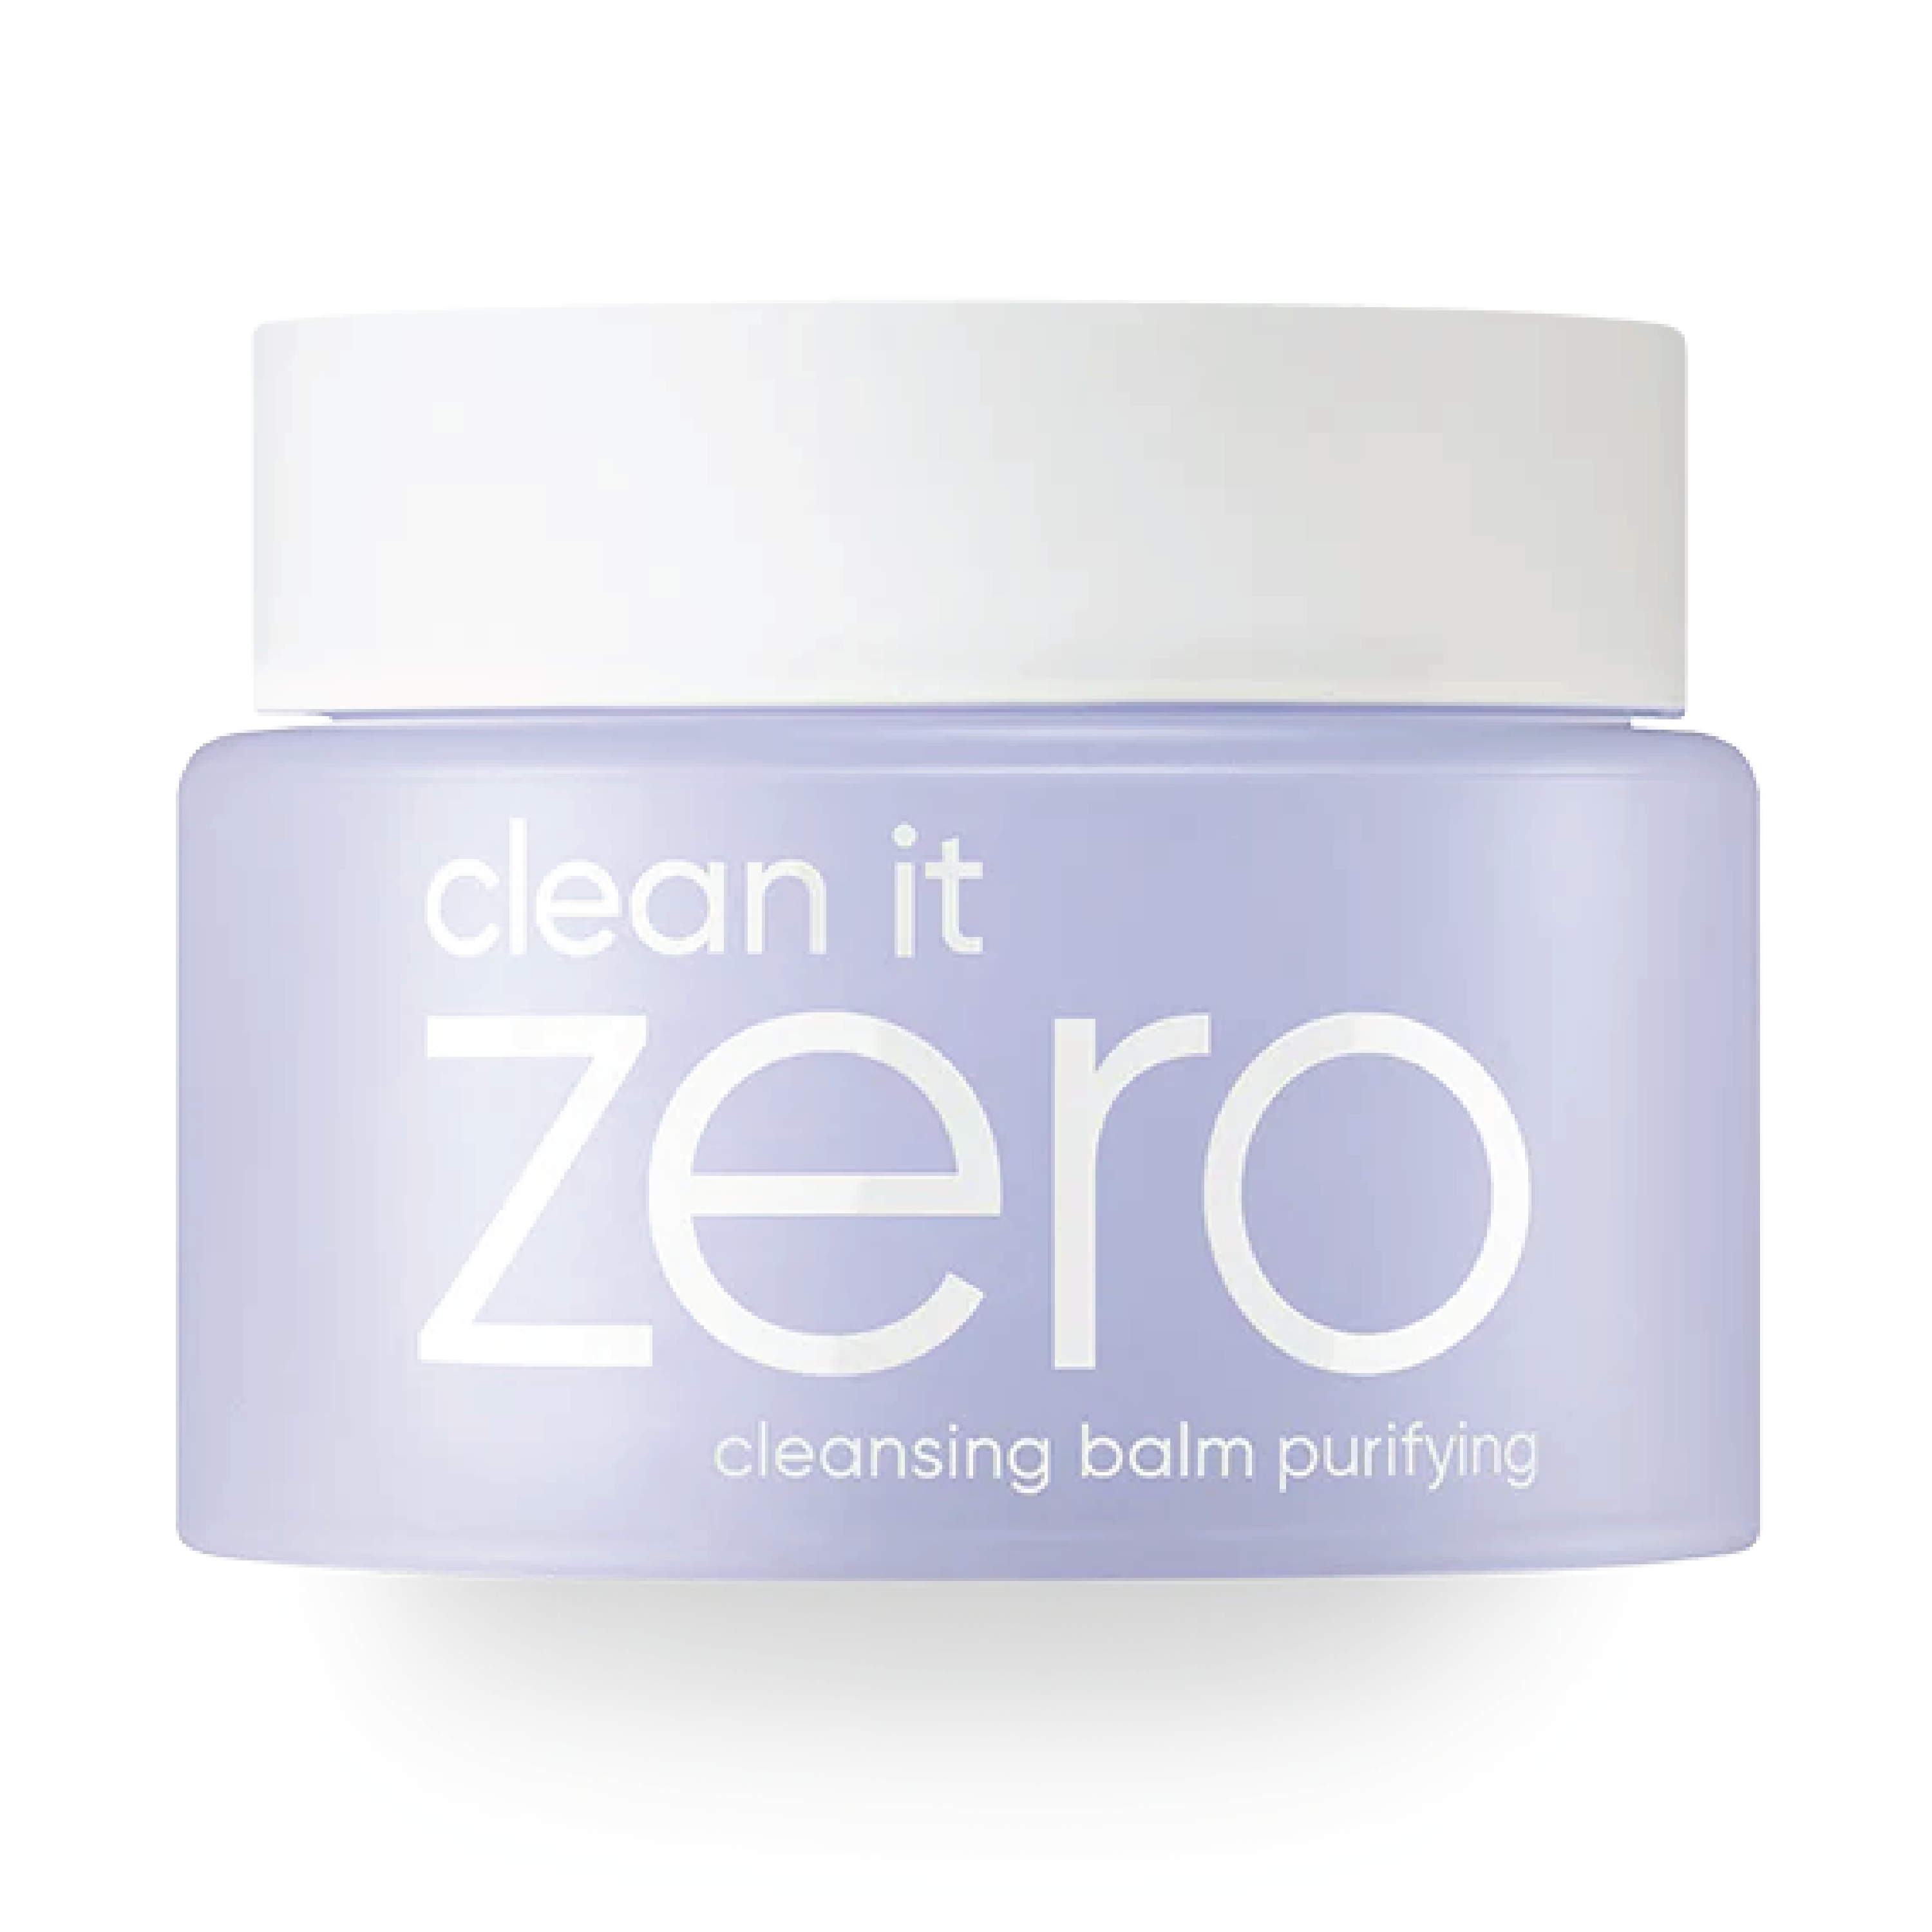 Banila Co Clean It Zero Cleansing Balm Purifying, 100 ml